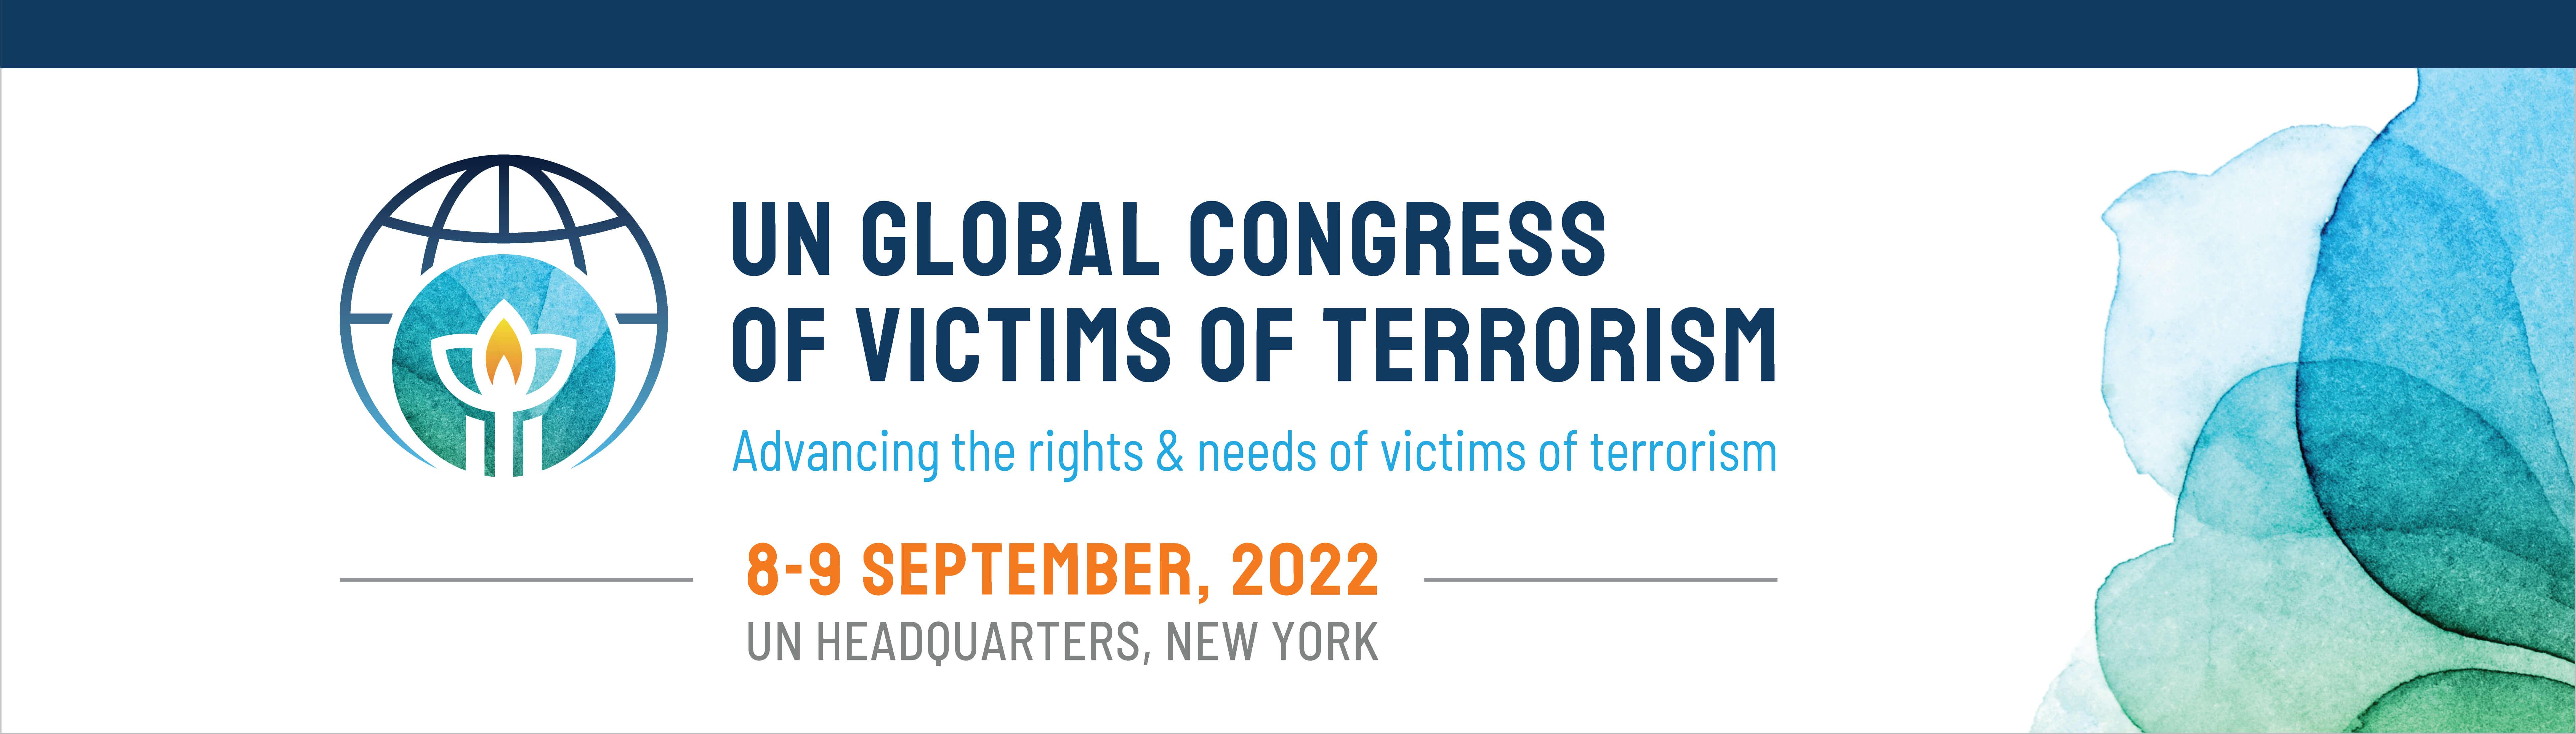 اولین کنگره جهانی قربانیان تروریسم